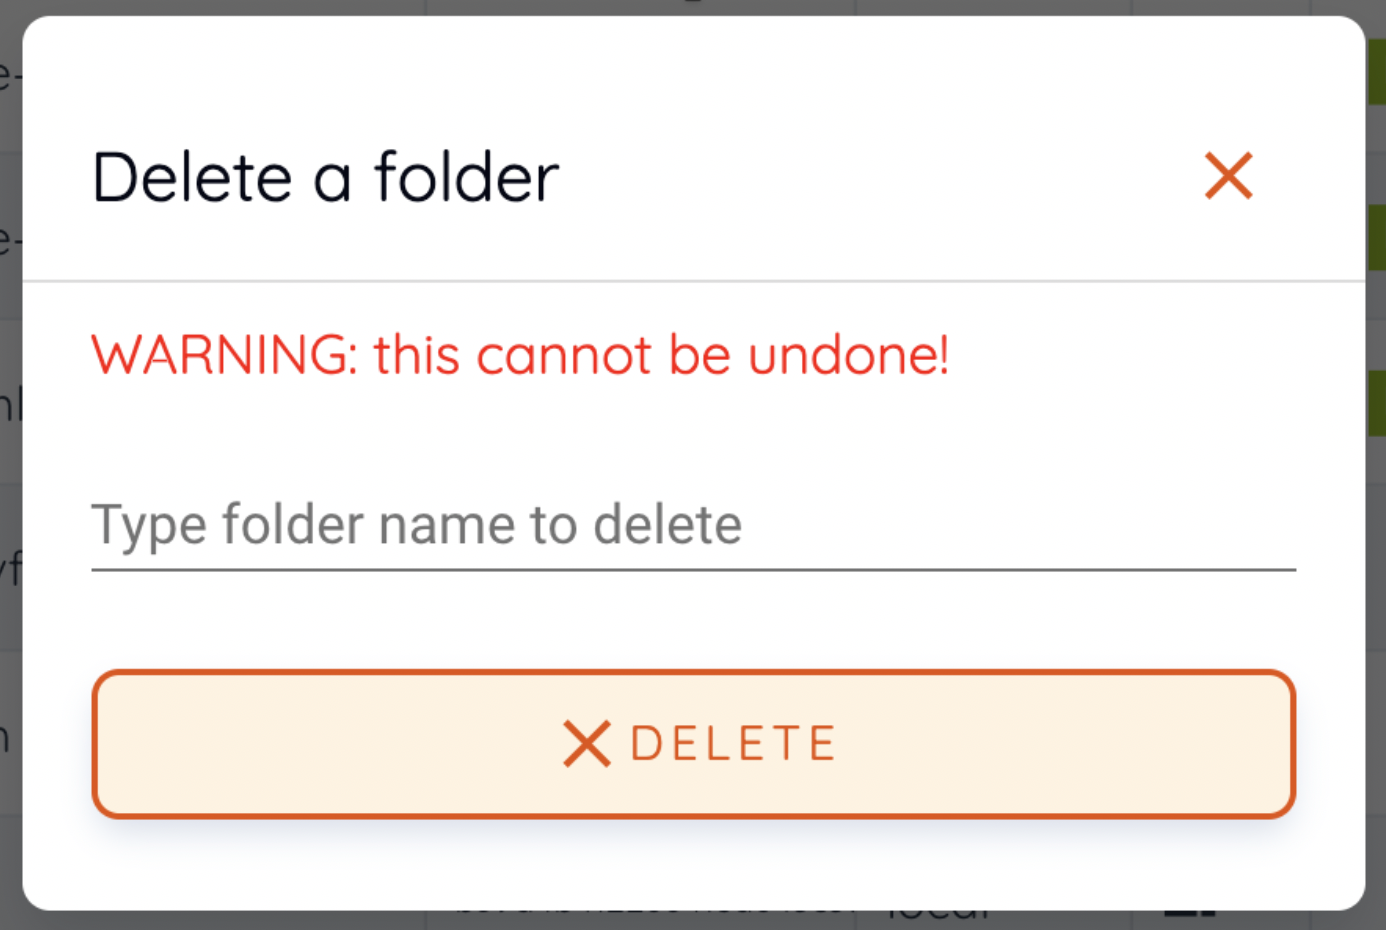 Folder deletion dialog